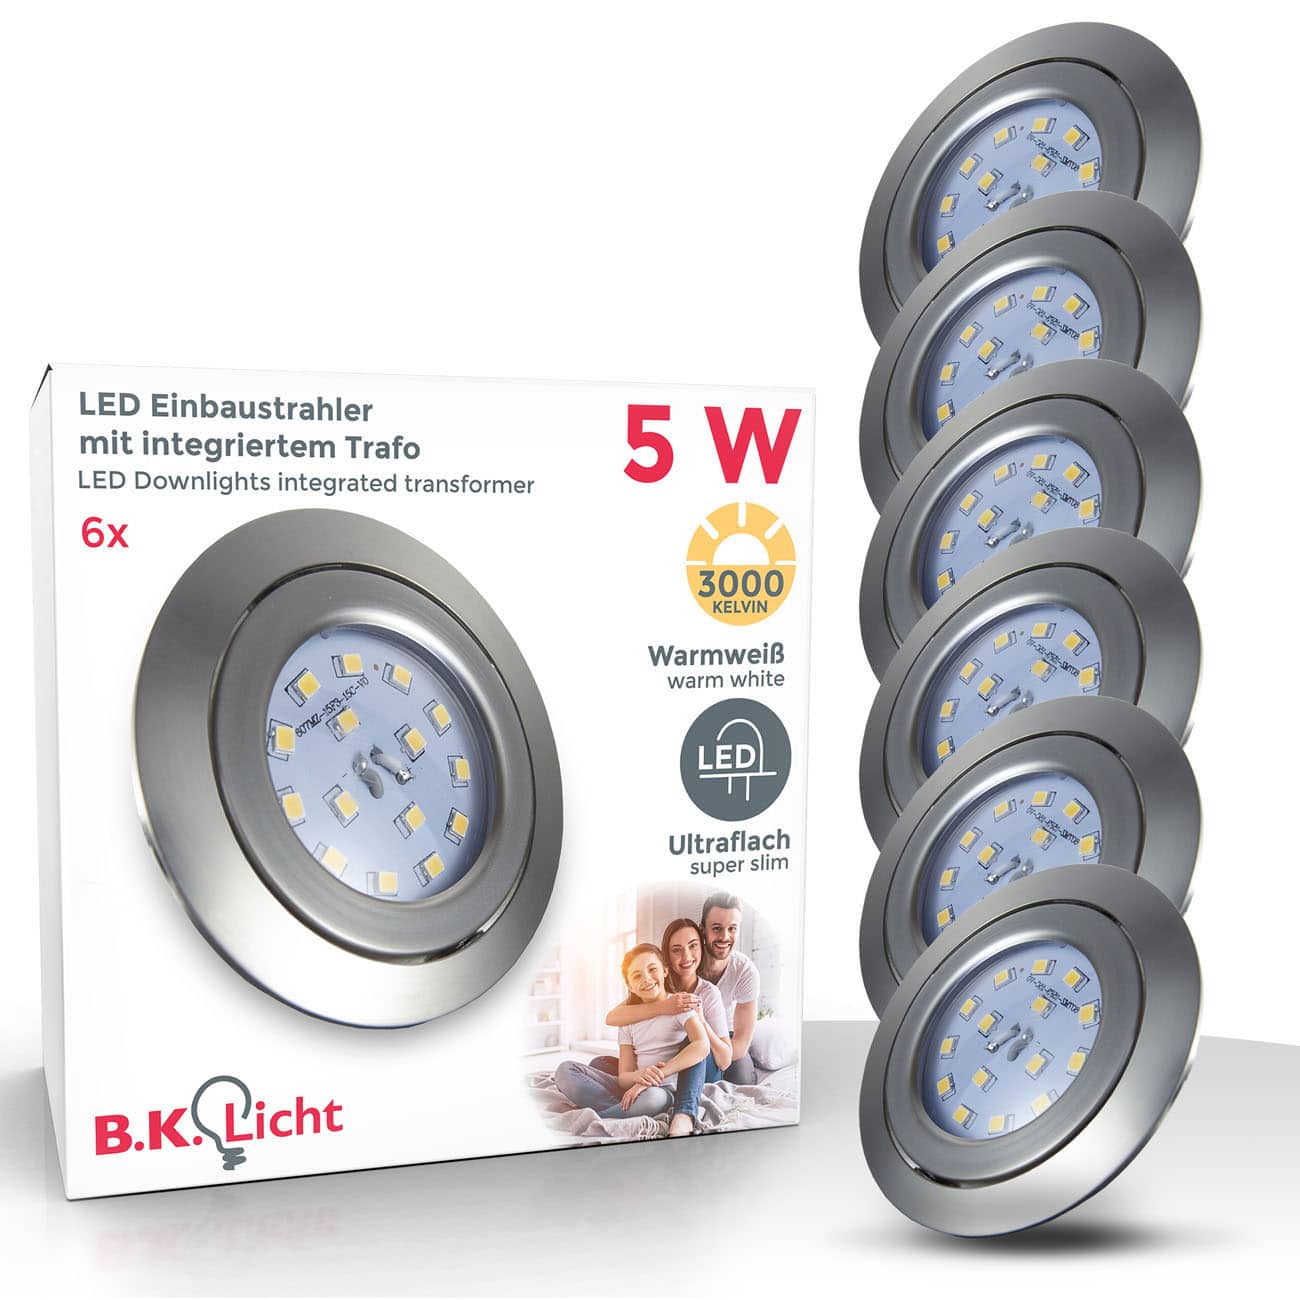 B.K.Licht Onlineshop  LED Leuchten & Lampen günstig kaufen